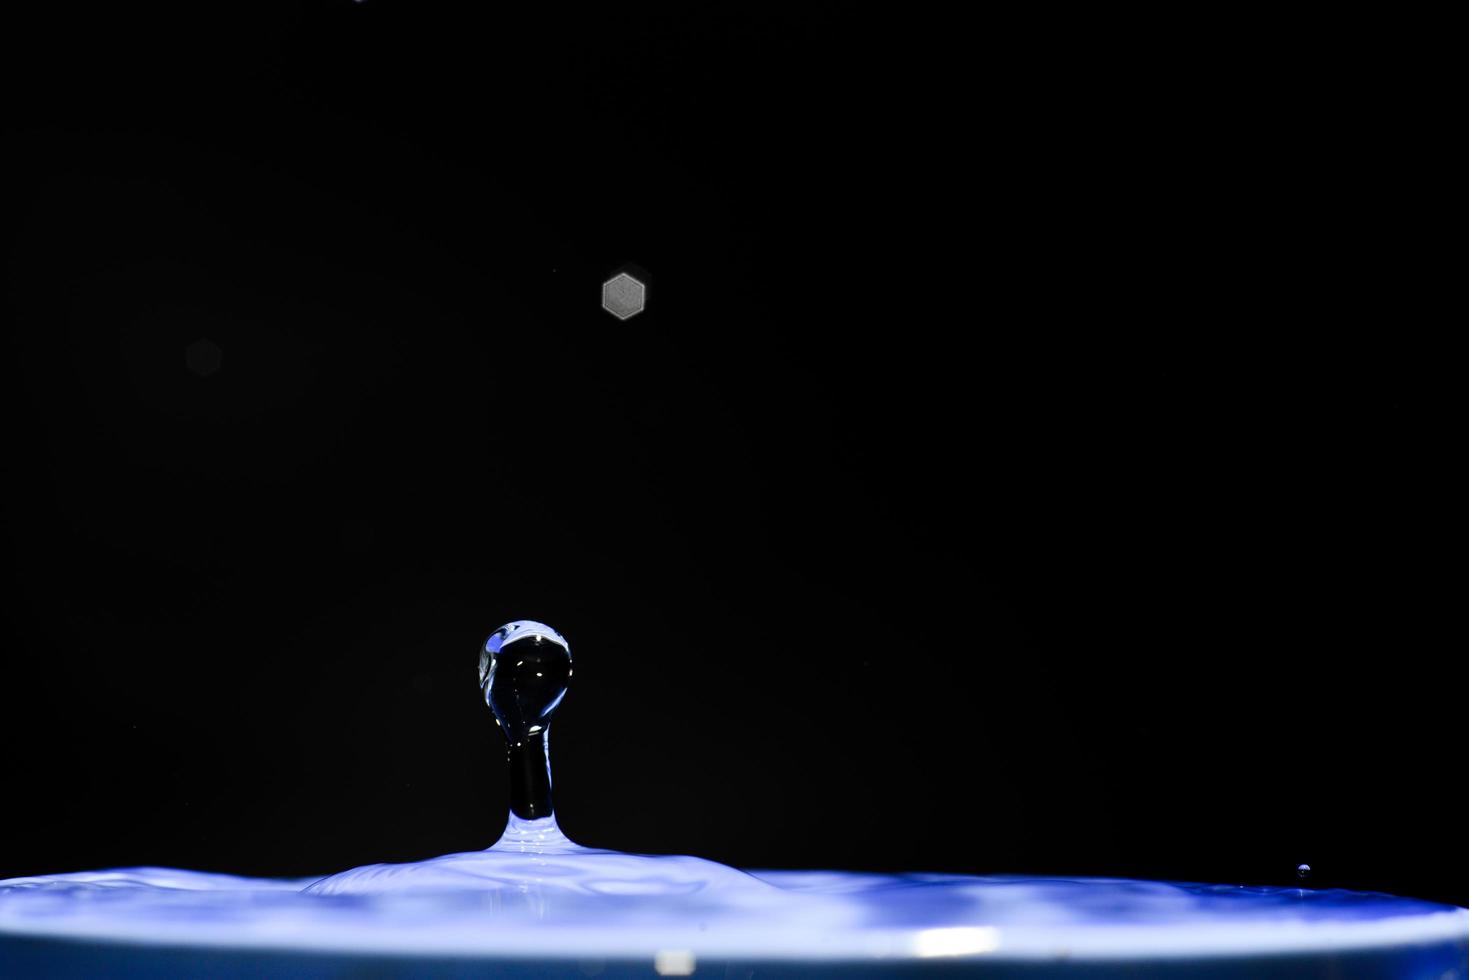 forme astratte dell'acqua. immagine per uno sfondo fatto di acqua. foto